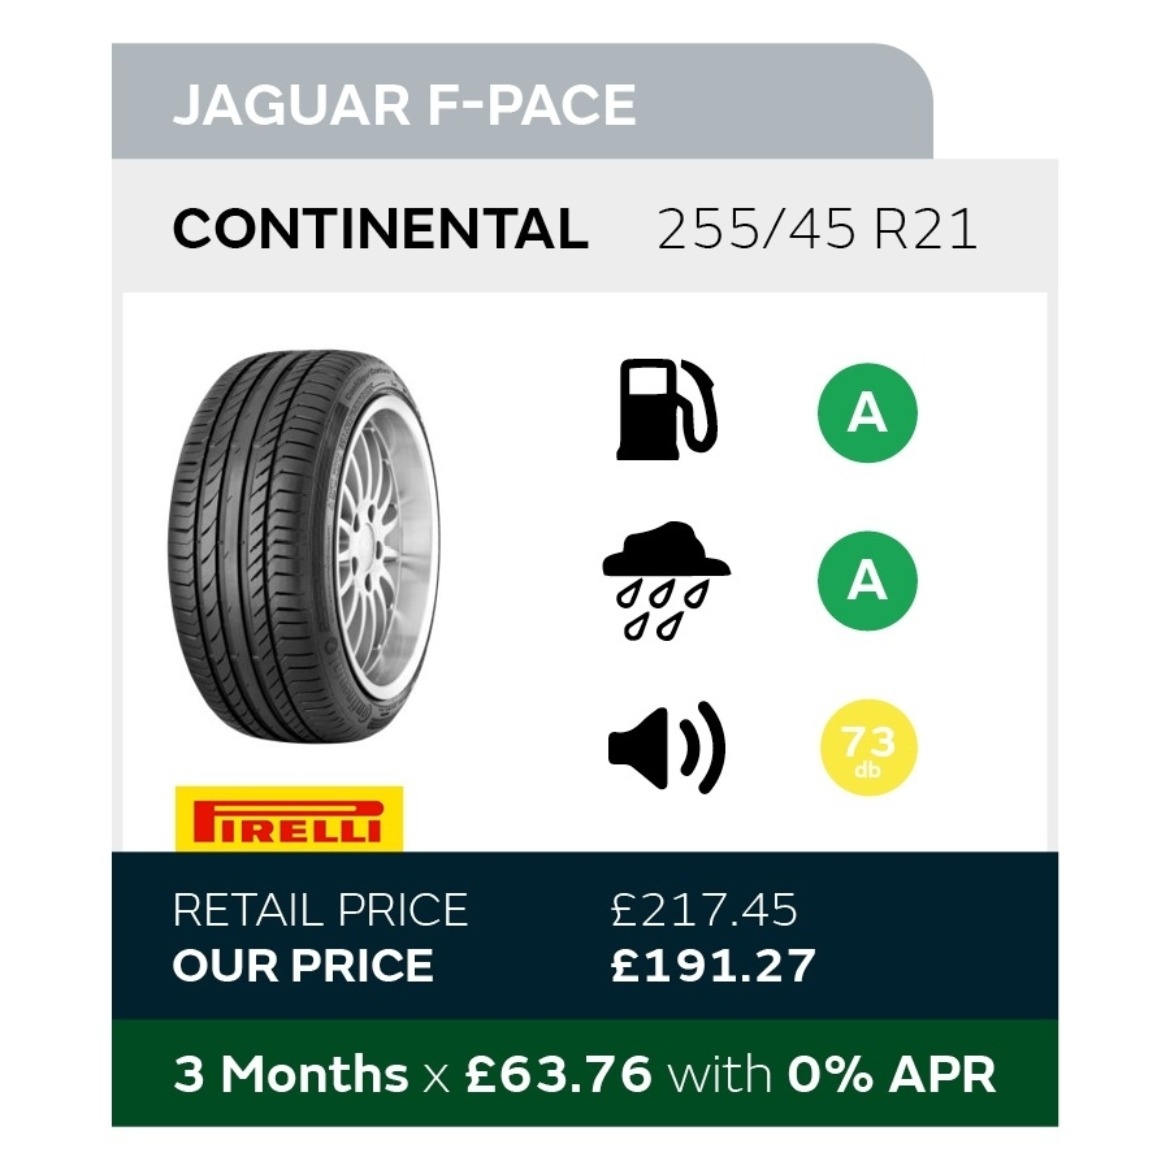 Jaguar F-Pace Tyre Offer